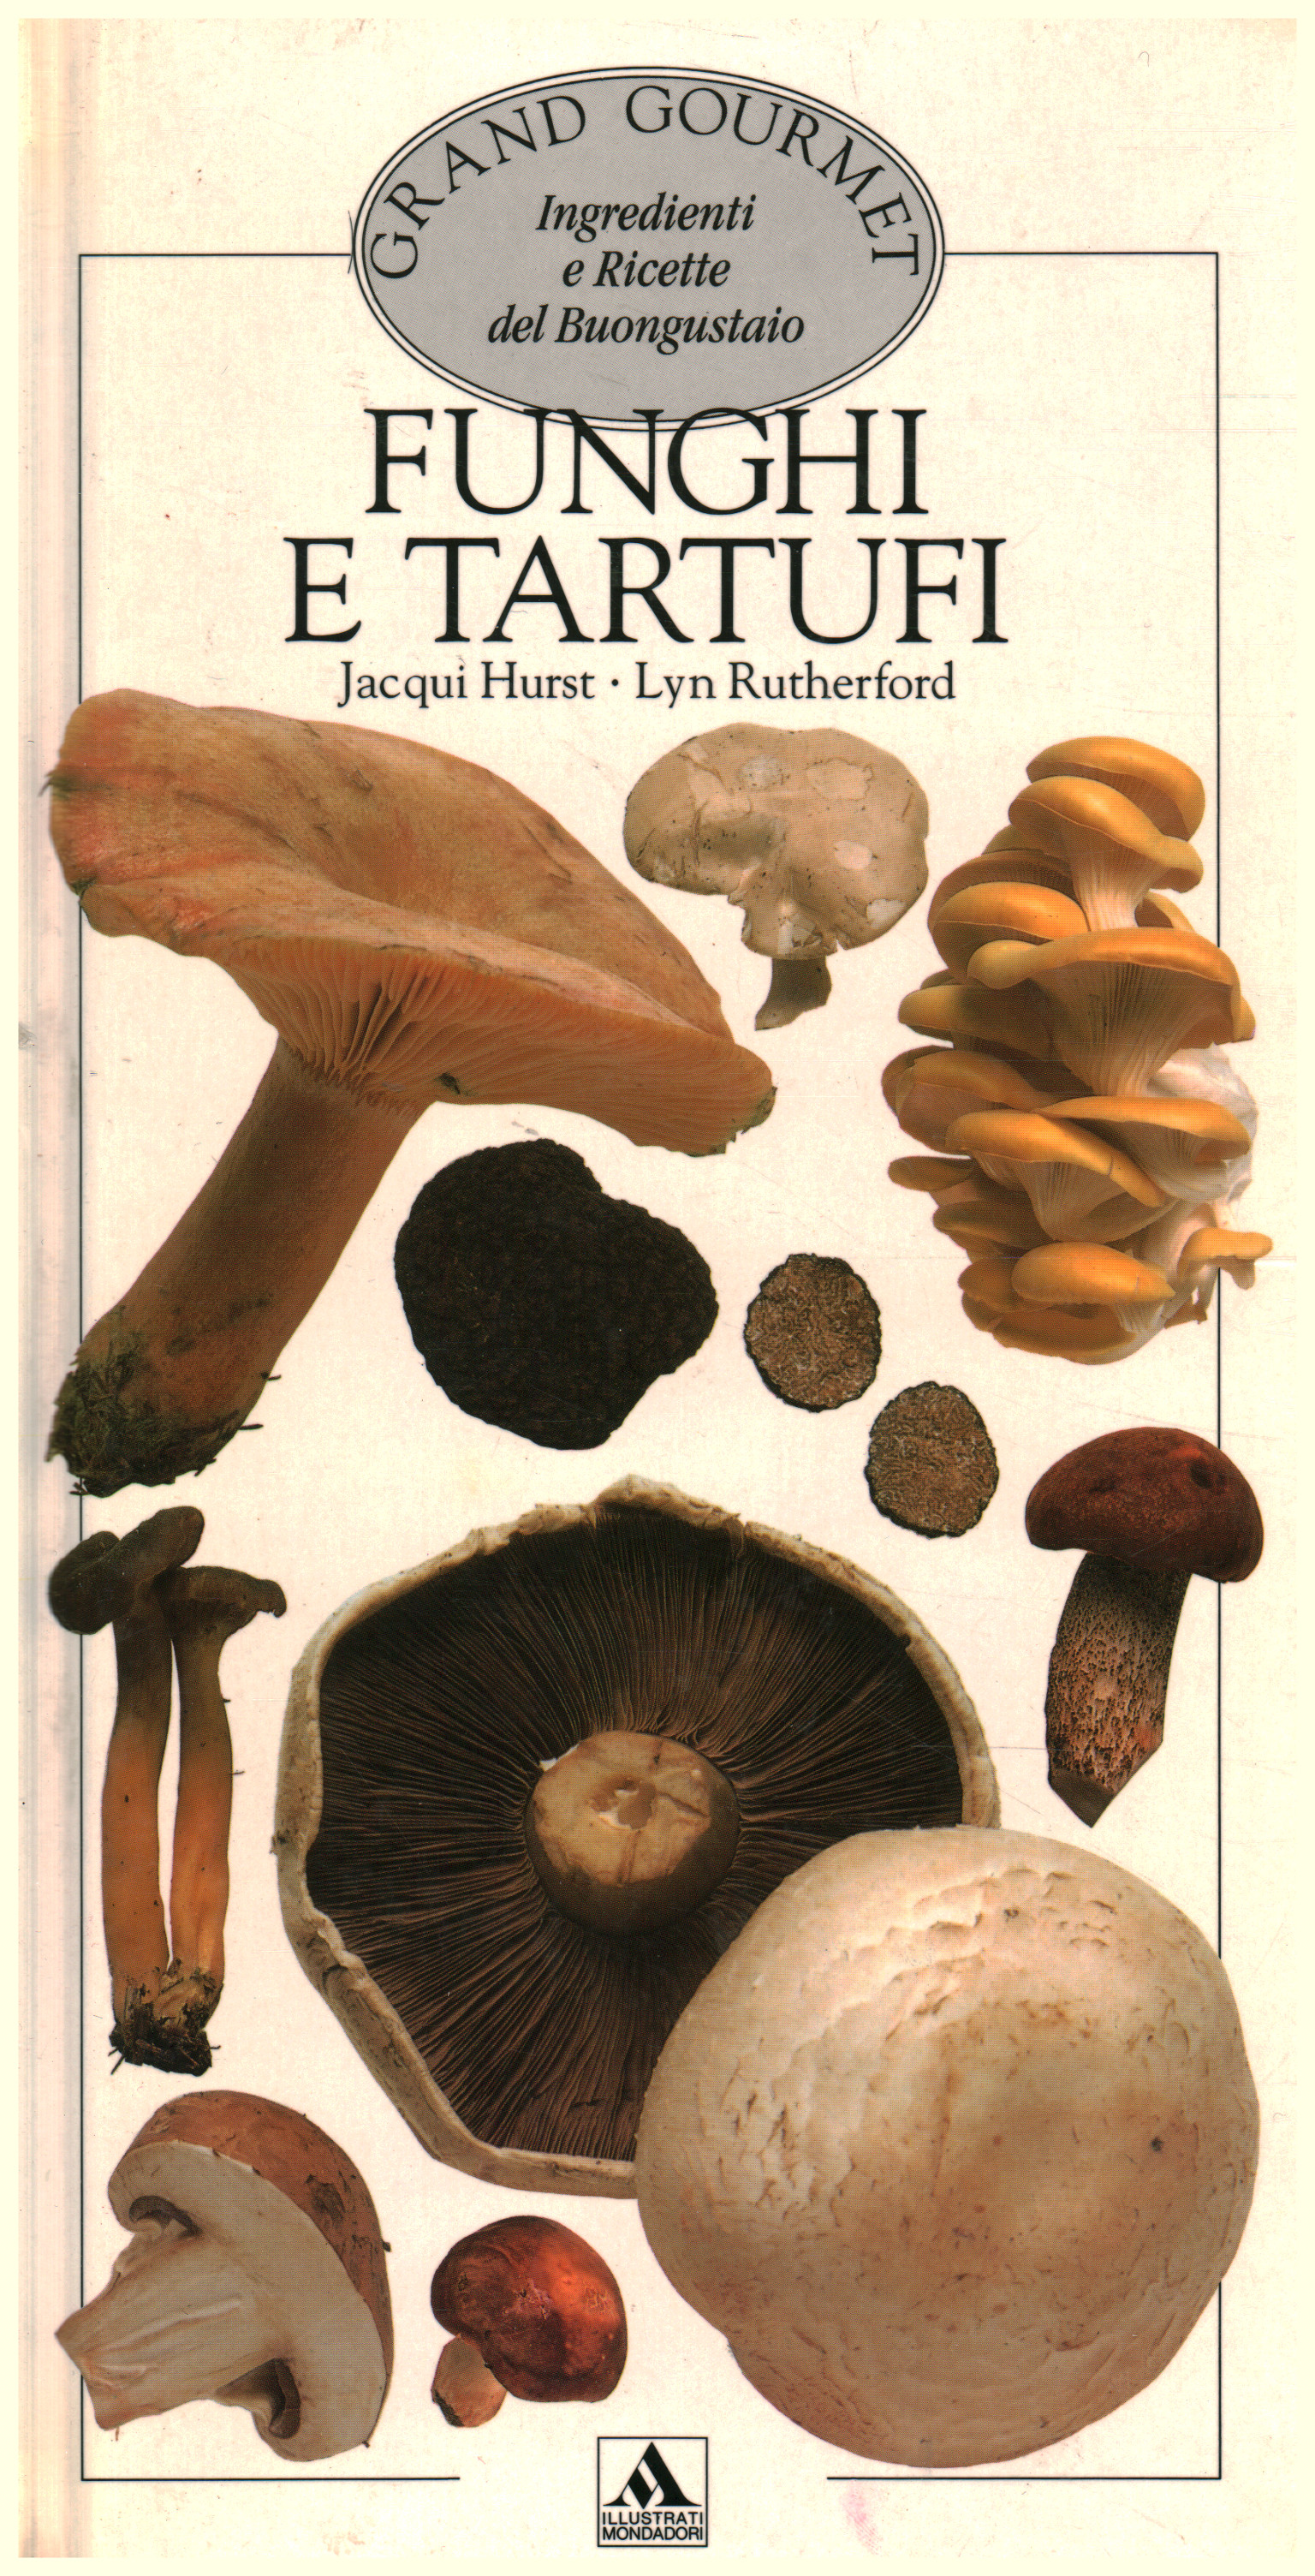 Funghi e tartufi, Jacqui Hurst Lyn Rutherford